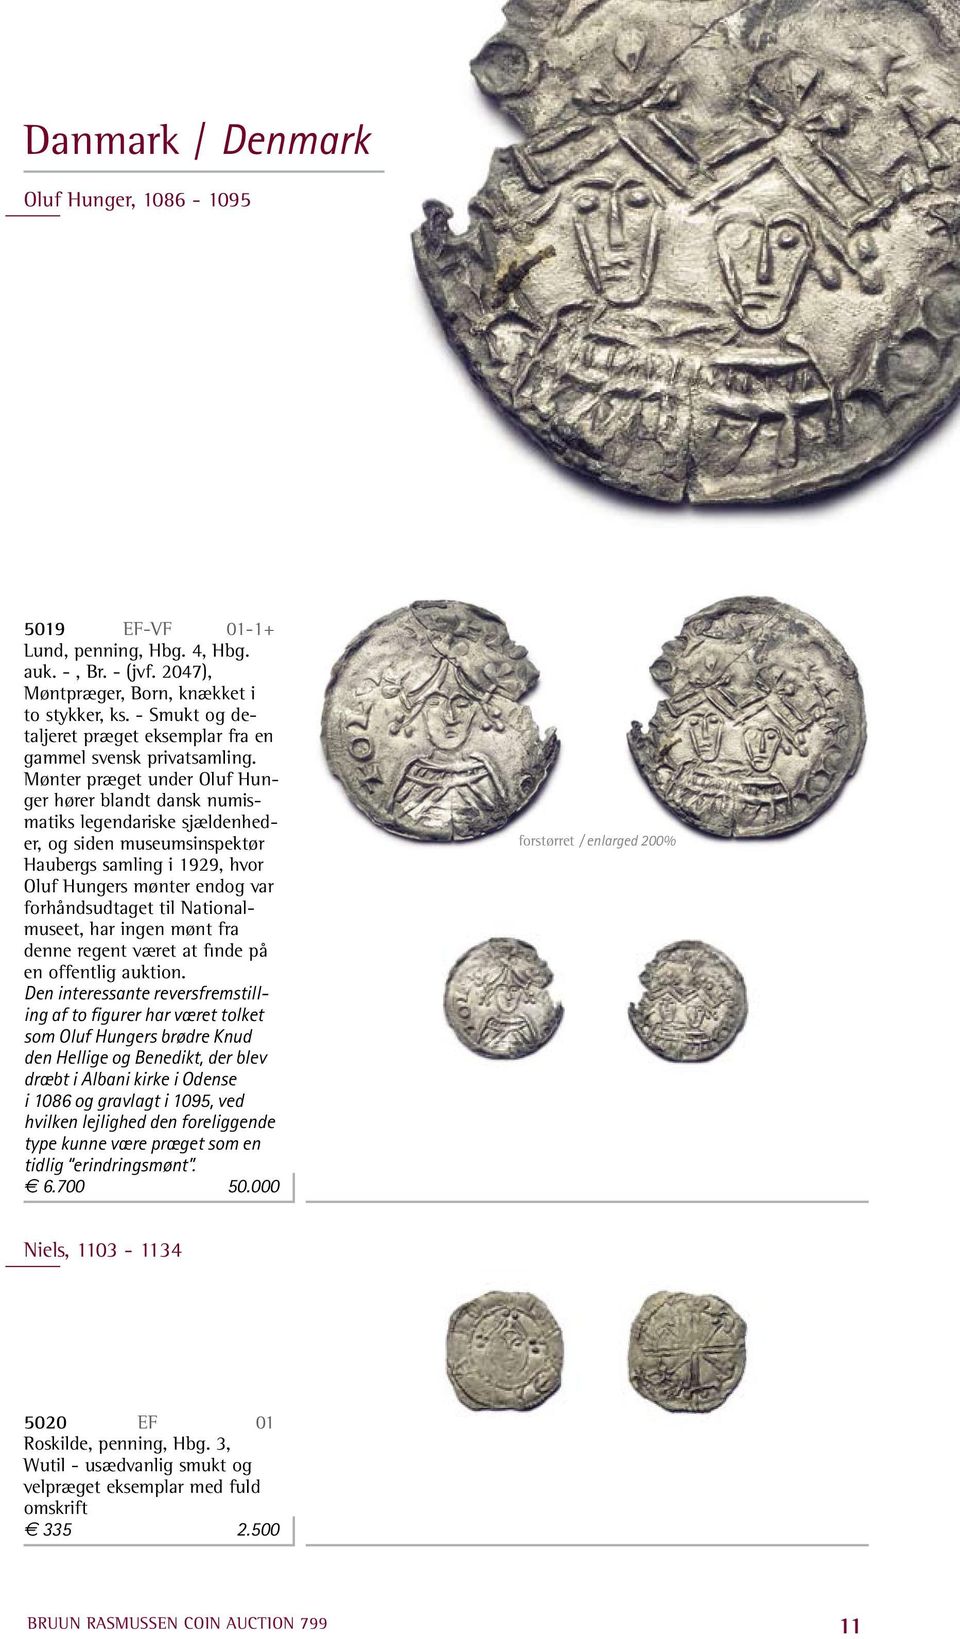 Mønter præget under Oluf Hunger hører blandt dansk numismatiks legendariske sjældenheder, og siden museumsinspektør Haubergs samling i 1929, hvor Oluf Hungers mønter endog var forhåndsudtaget til